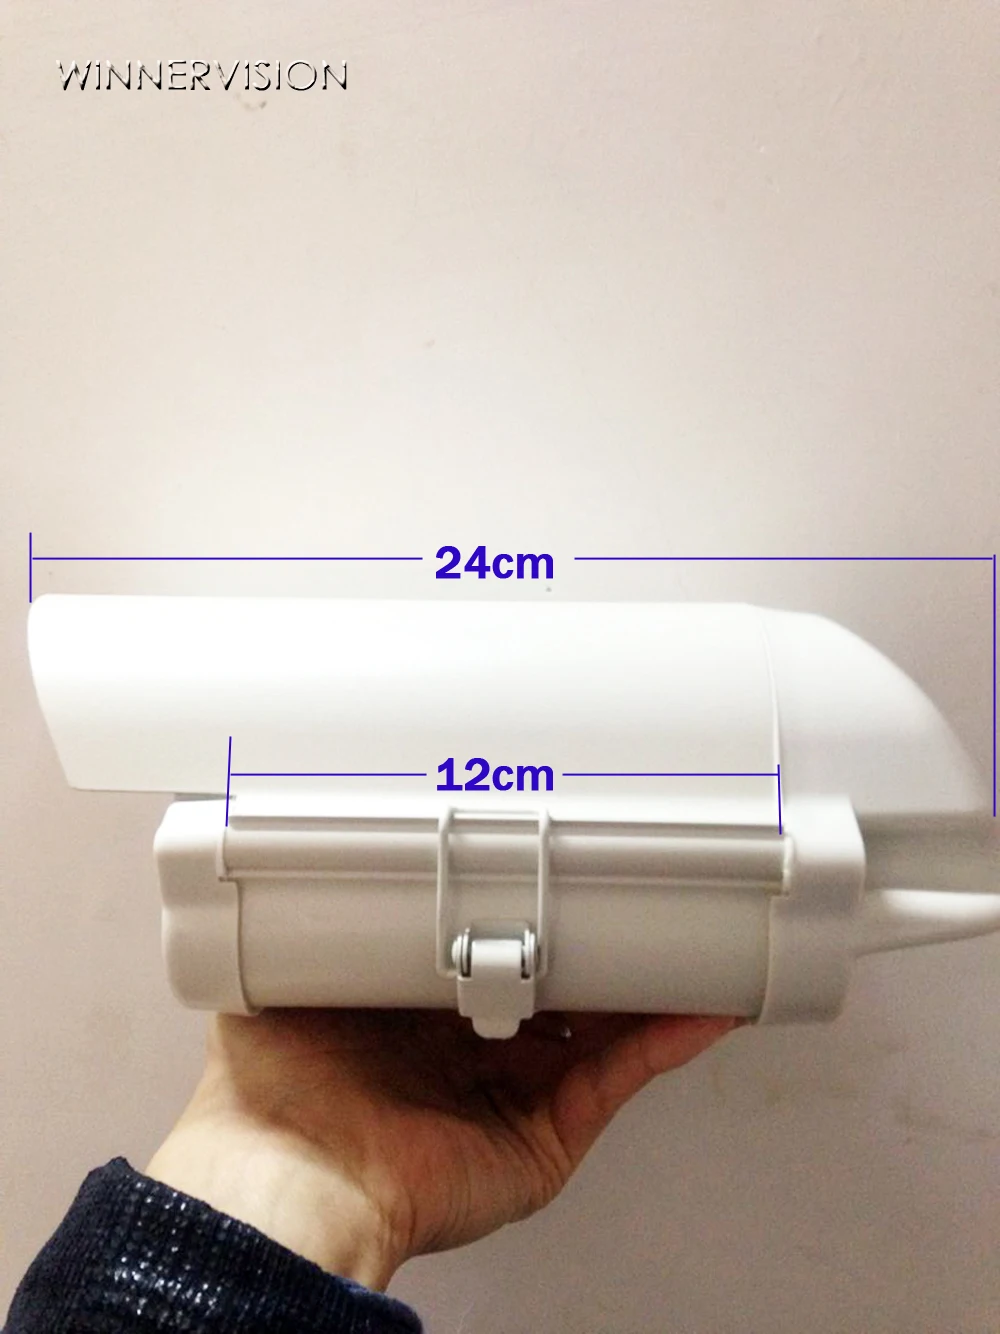 6 дюймов CCTV камеры видеонаблюдения Корпусная коробка открытый корпус водонепроницаемый алюминиевый корпус сплав крышка с вырезом объектива